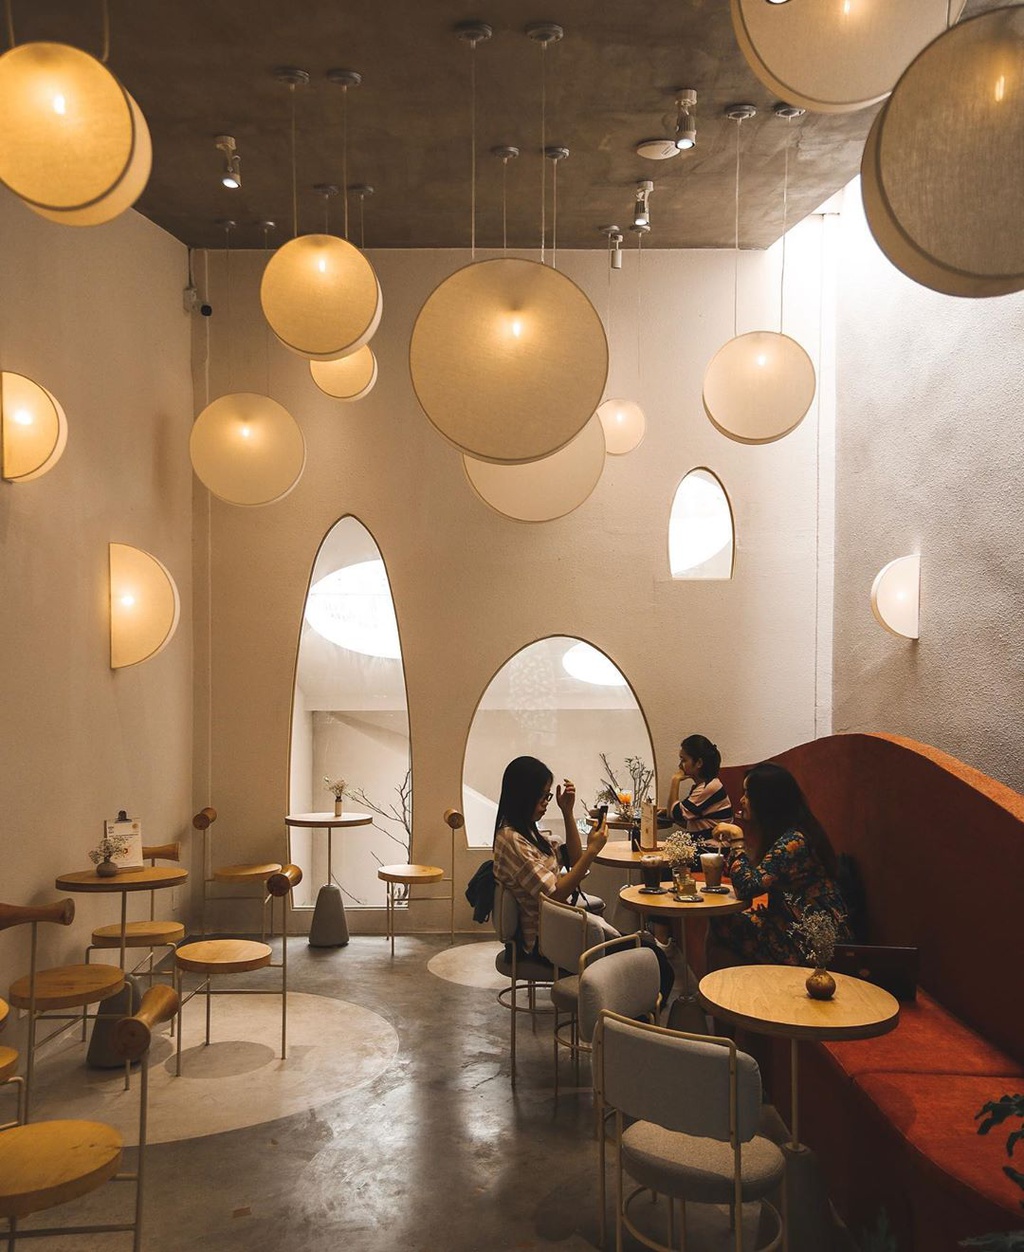 20 Quán Cafe Đẹp Ở Sài Gòn - Tphcm Giá Rẻ Có View Sống Ảo, Decor Xinh